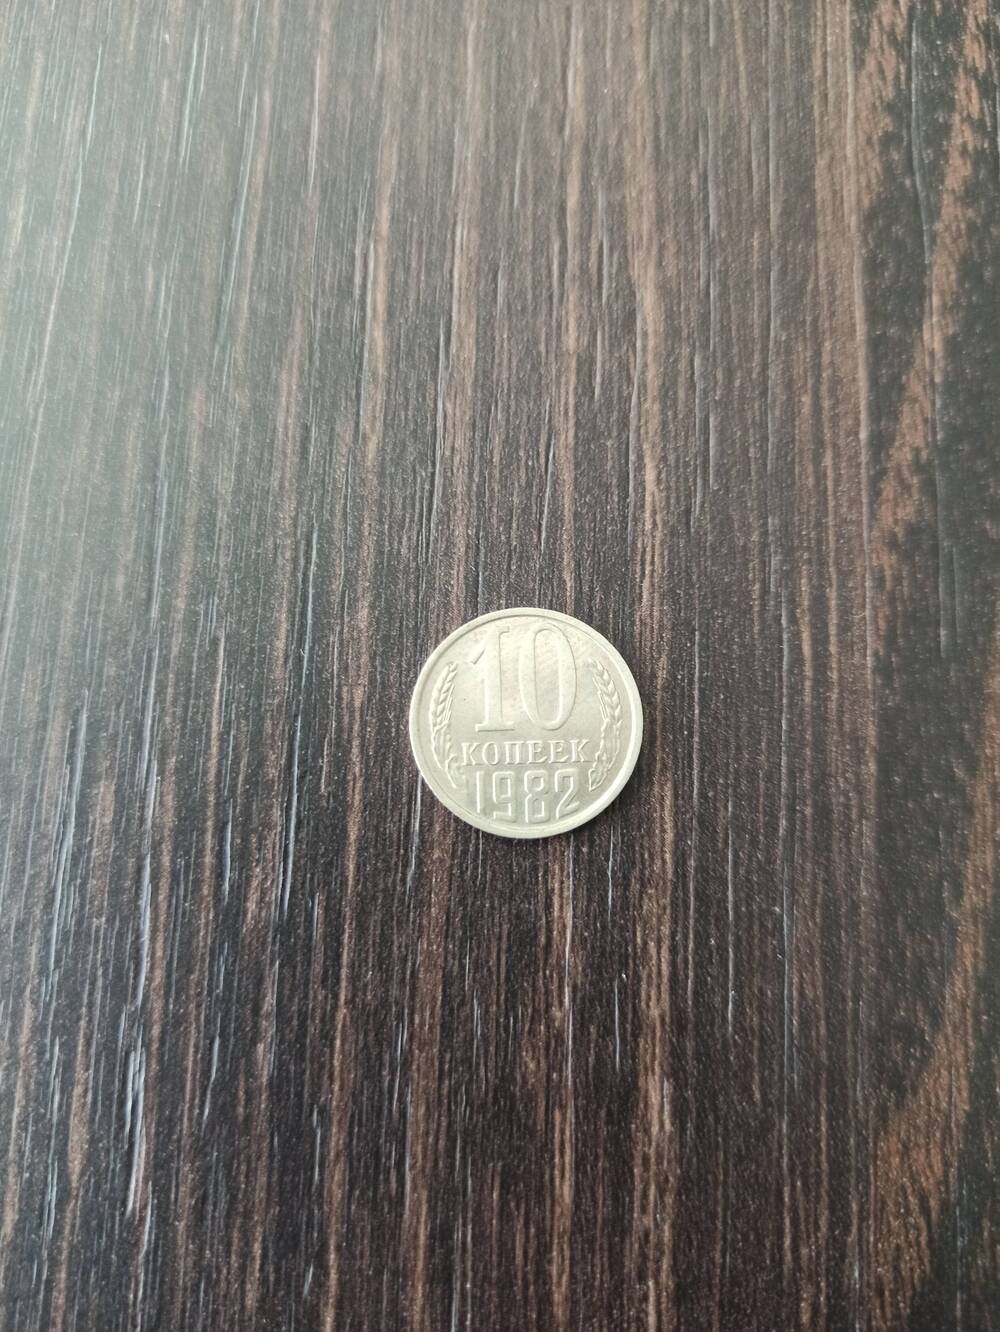 Нумизматика. Монета СССР достоинством 10 копеек 1982 года.